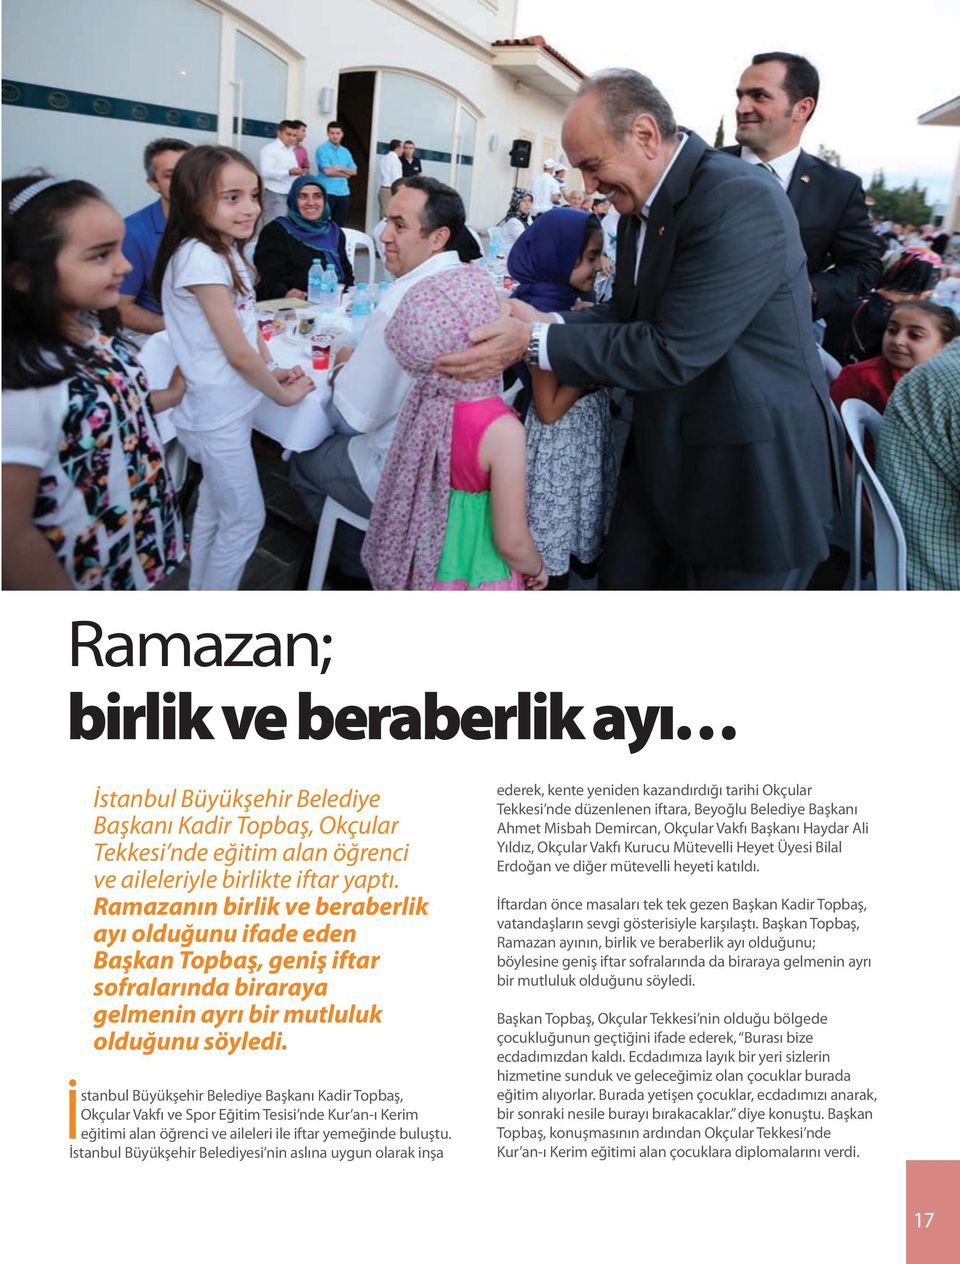 İstanbul Büyükşehir Belediye Başkanı Kadir Topbaş, Okçular Vakfı ve Spor Eğitim Tesisi nde Kur an-ı Kerim eğitimi alan öğrenci ve aileleri ile iftar yemeğinde buluştu.